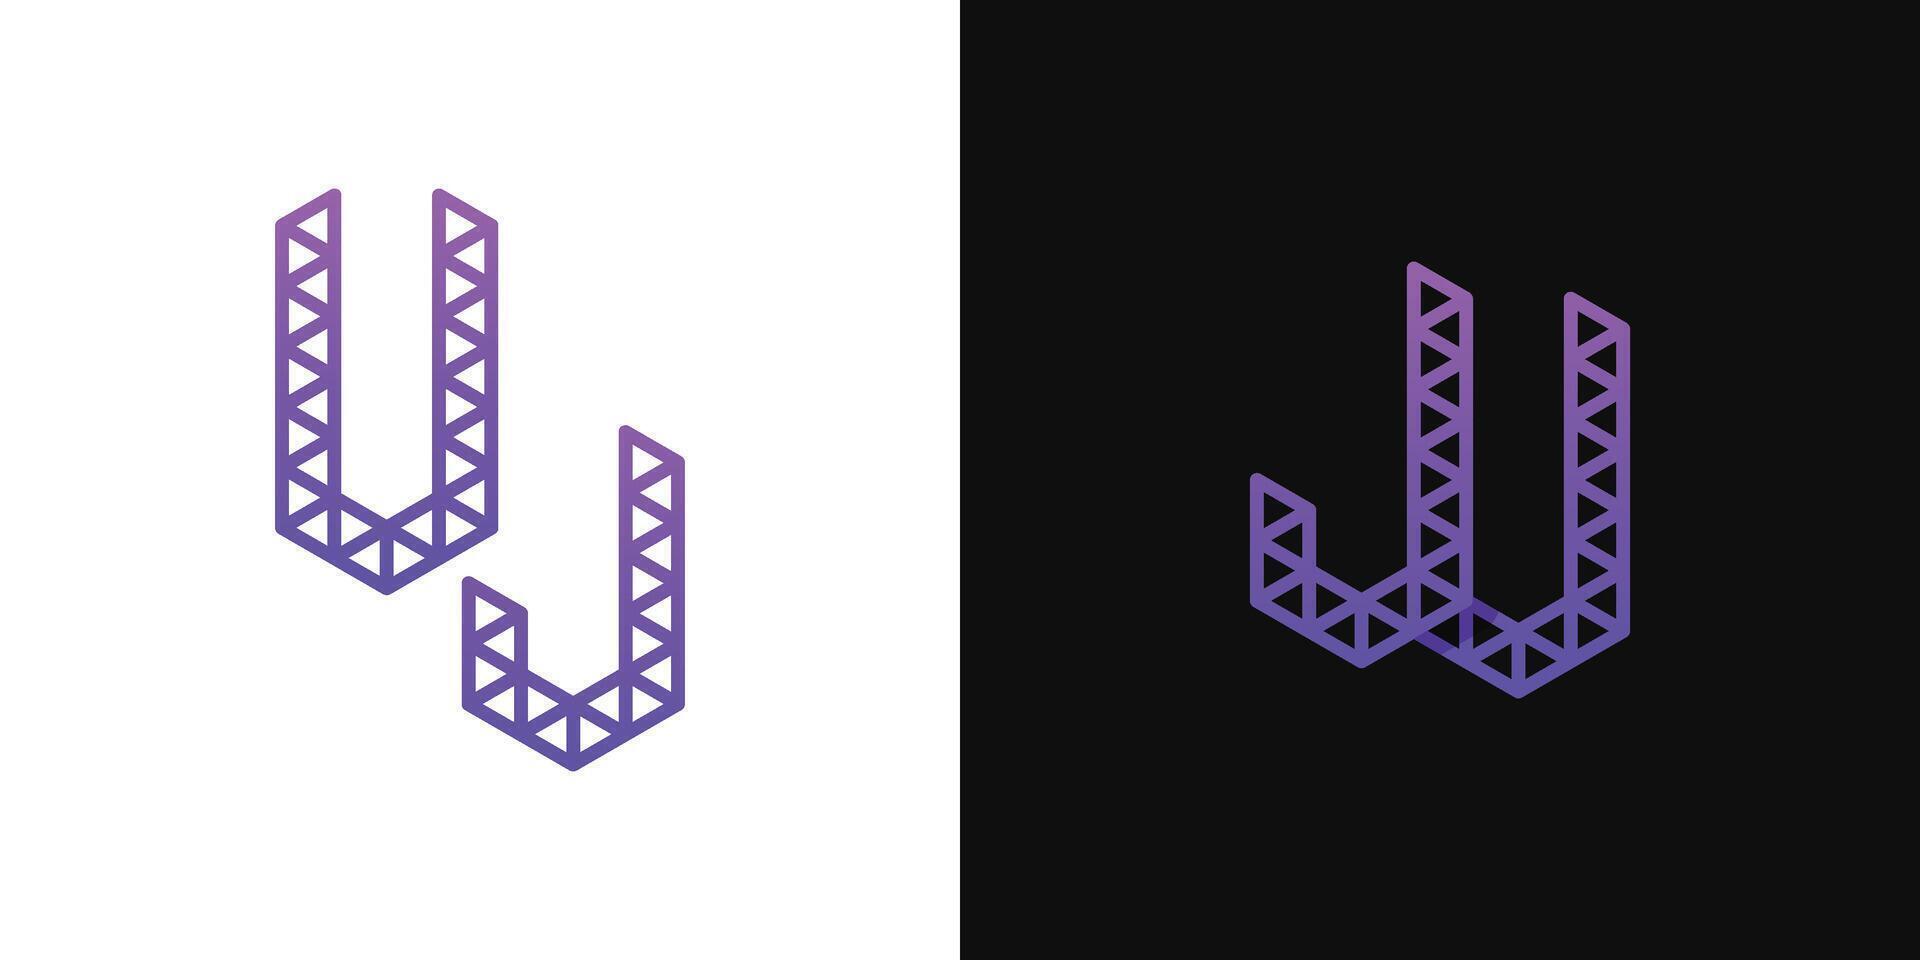 Briefe ju und uj Polygon Logo, geeignet zum Geschäft verbunden zu Polygon mit ju oder uj Initialen vektor